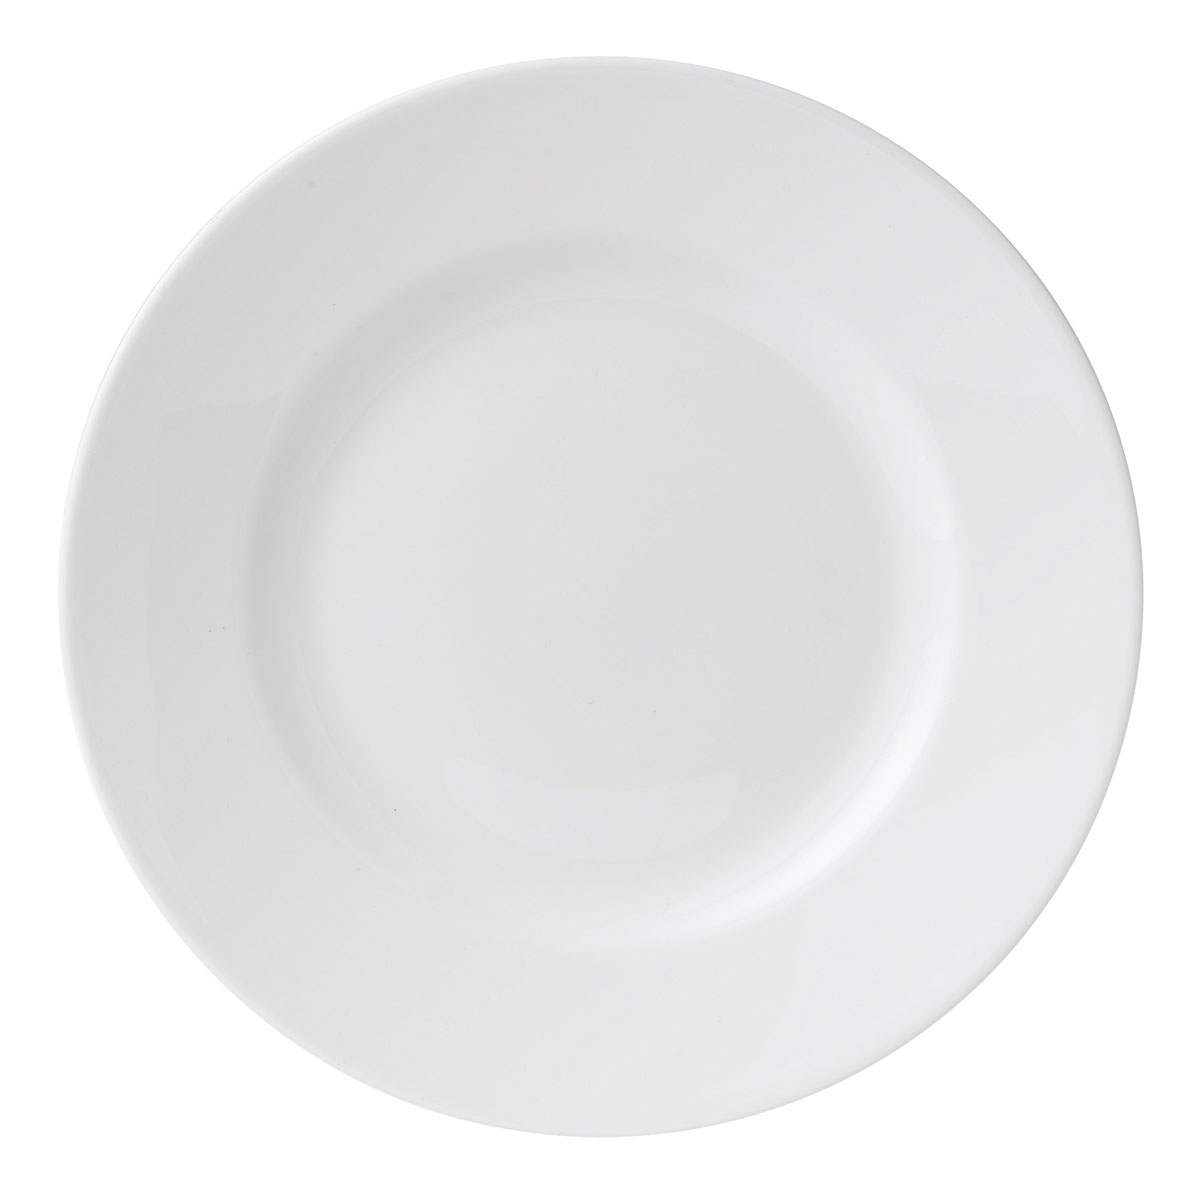 Wedgwood Wedgwood White Salad Plate, Single